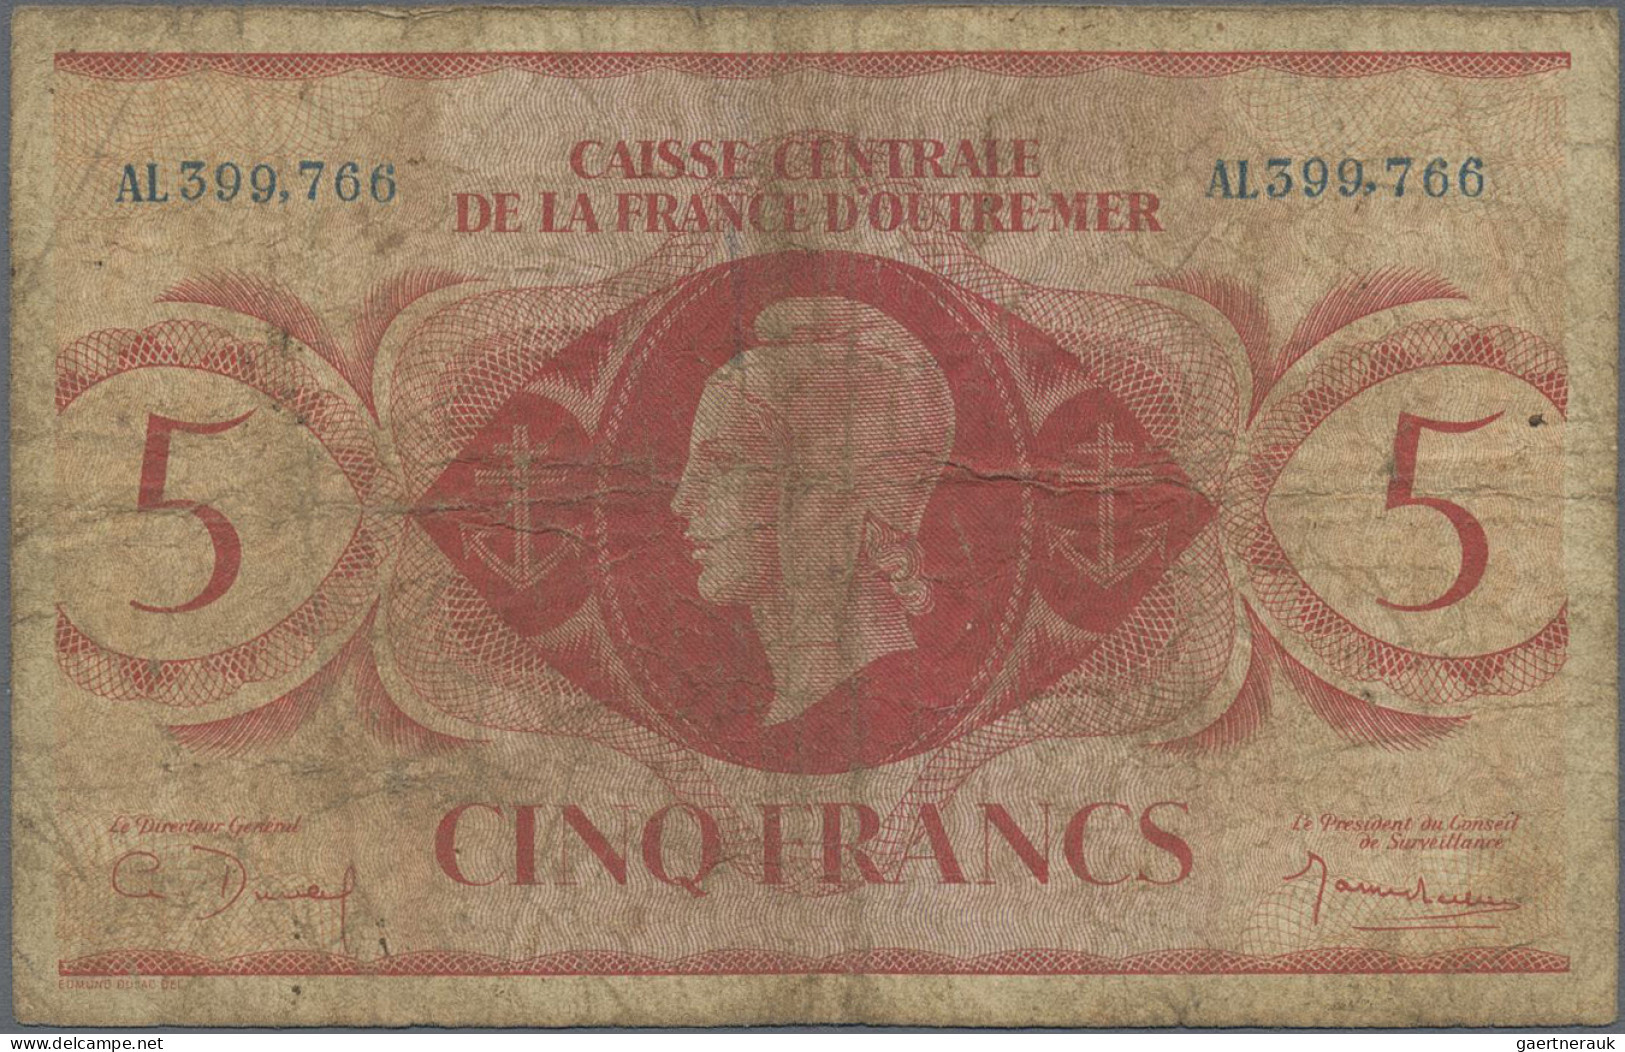 French Equatorial Africa: Caisse Centrale De La France D'Outre-Mer – FRENCH EQUA - Equatoriaal-Guinea